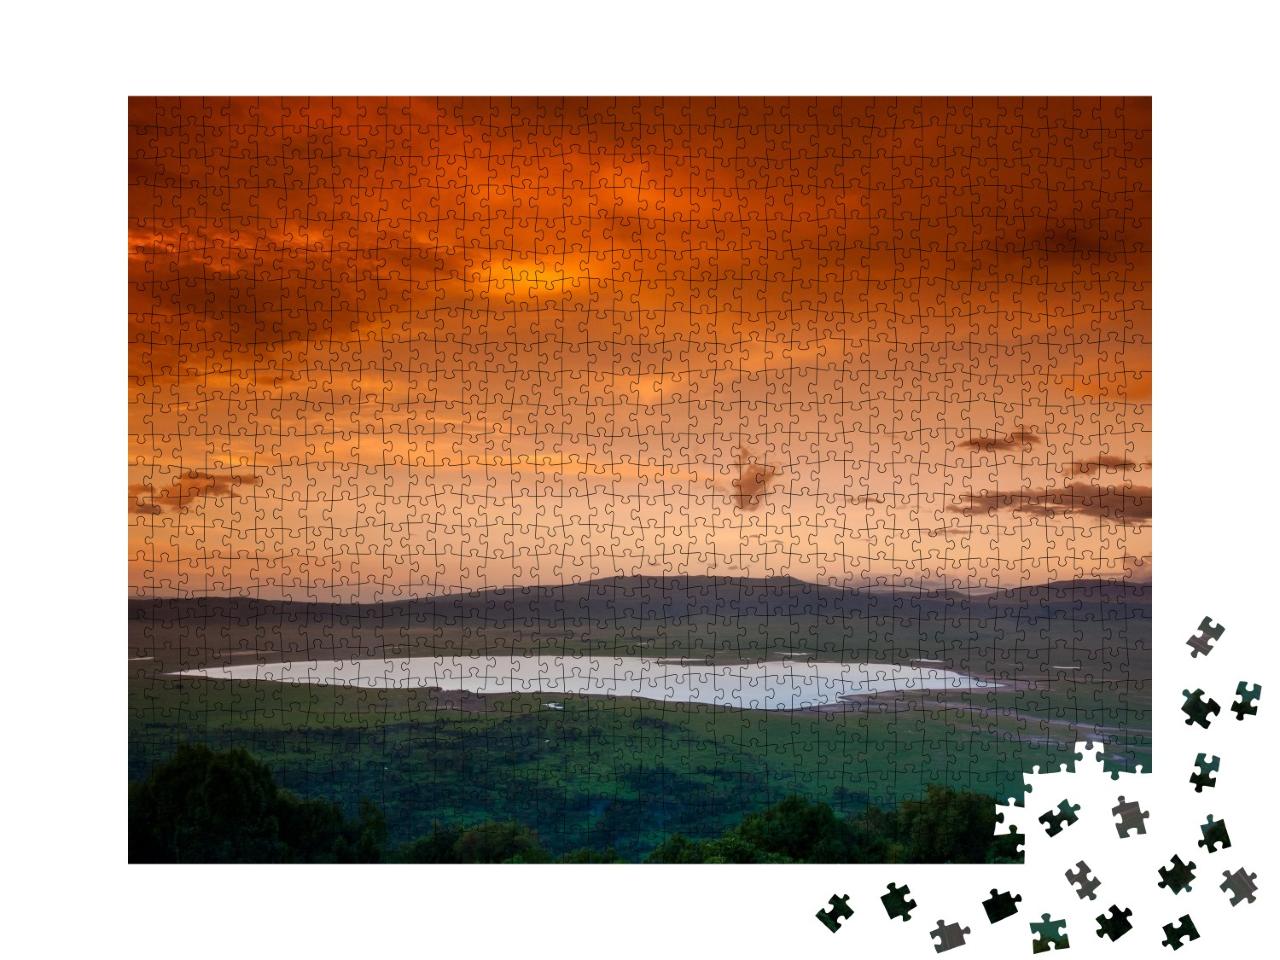 Puzzle de 1000 pièces « Coucher de soleil africain sur le cratère du Ngorongoro, Tanzanie »